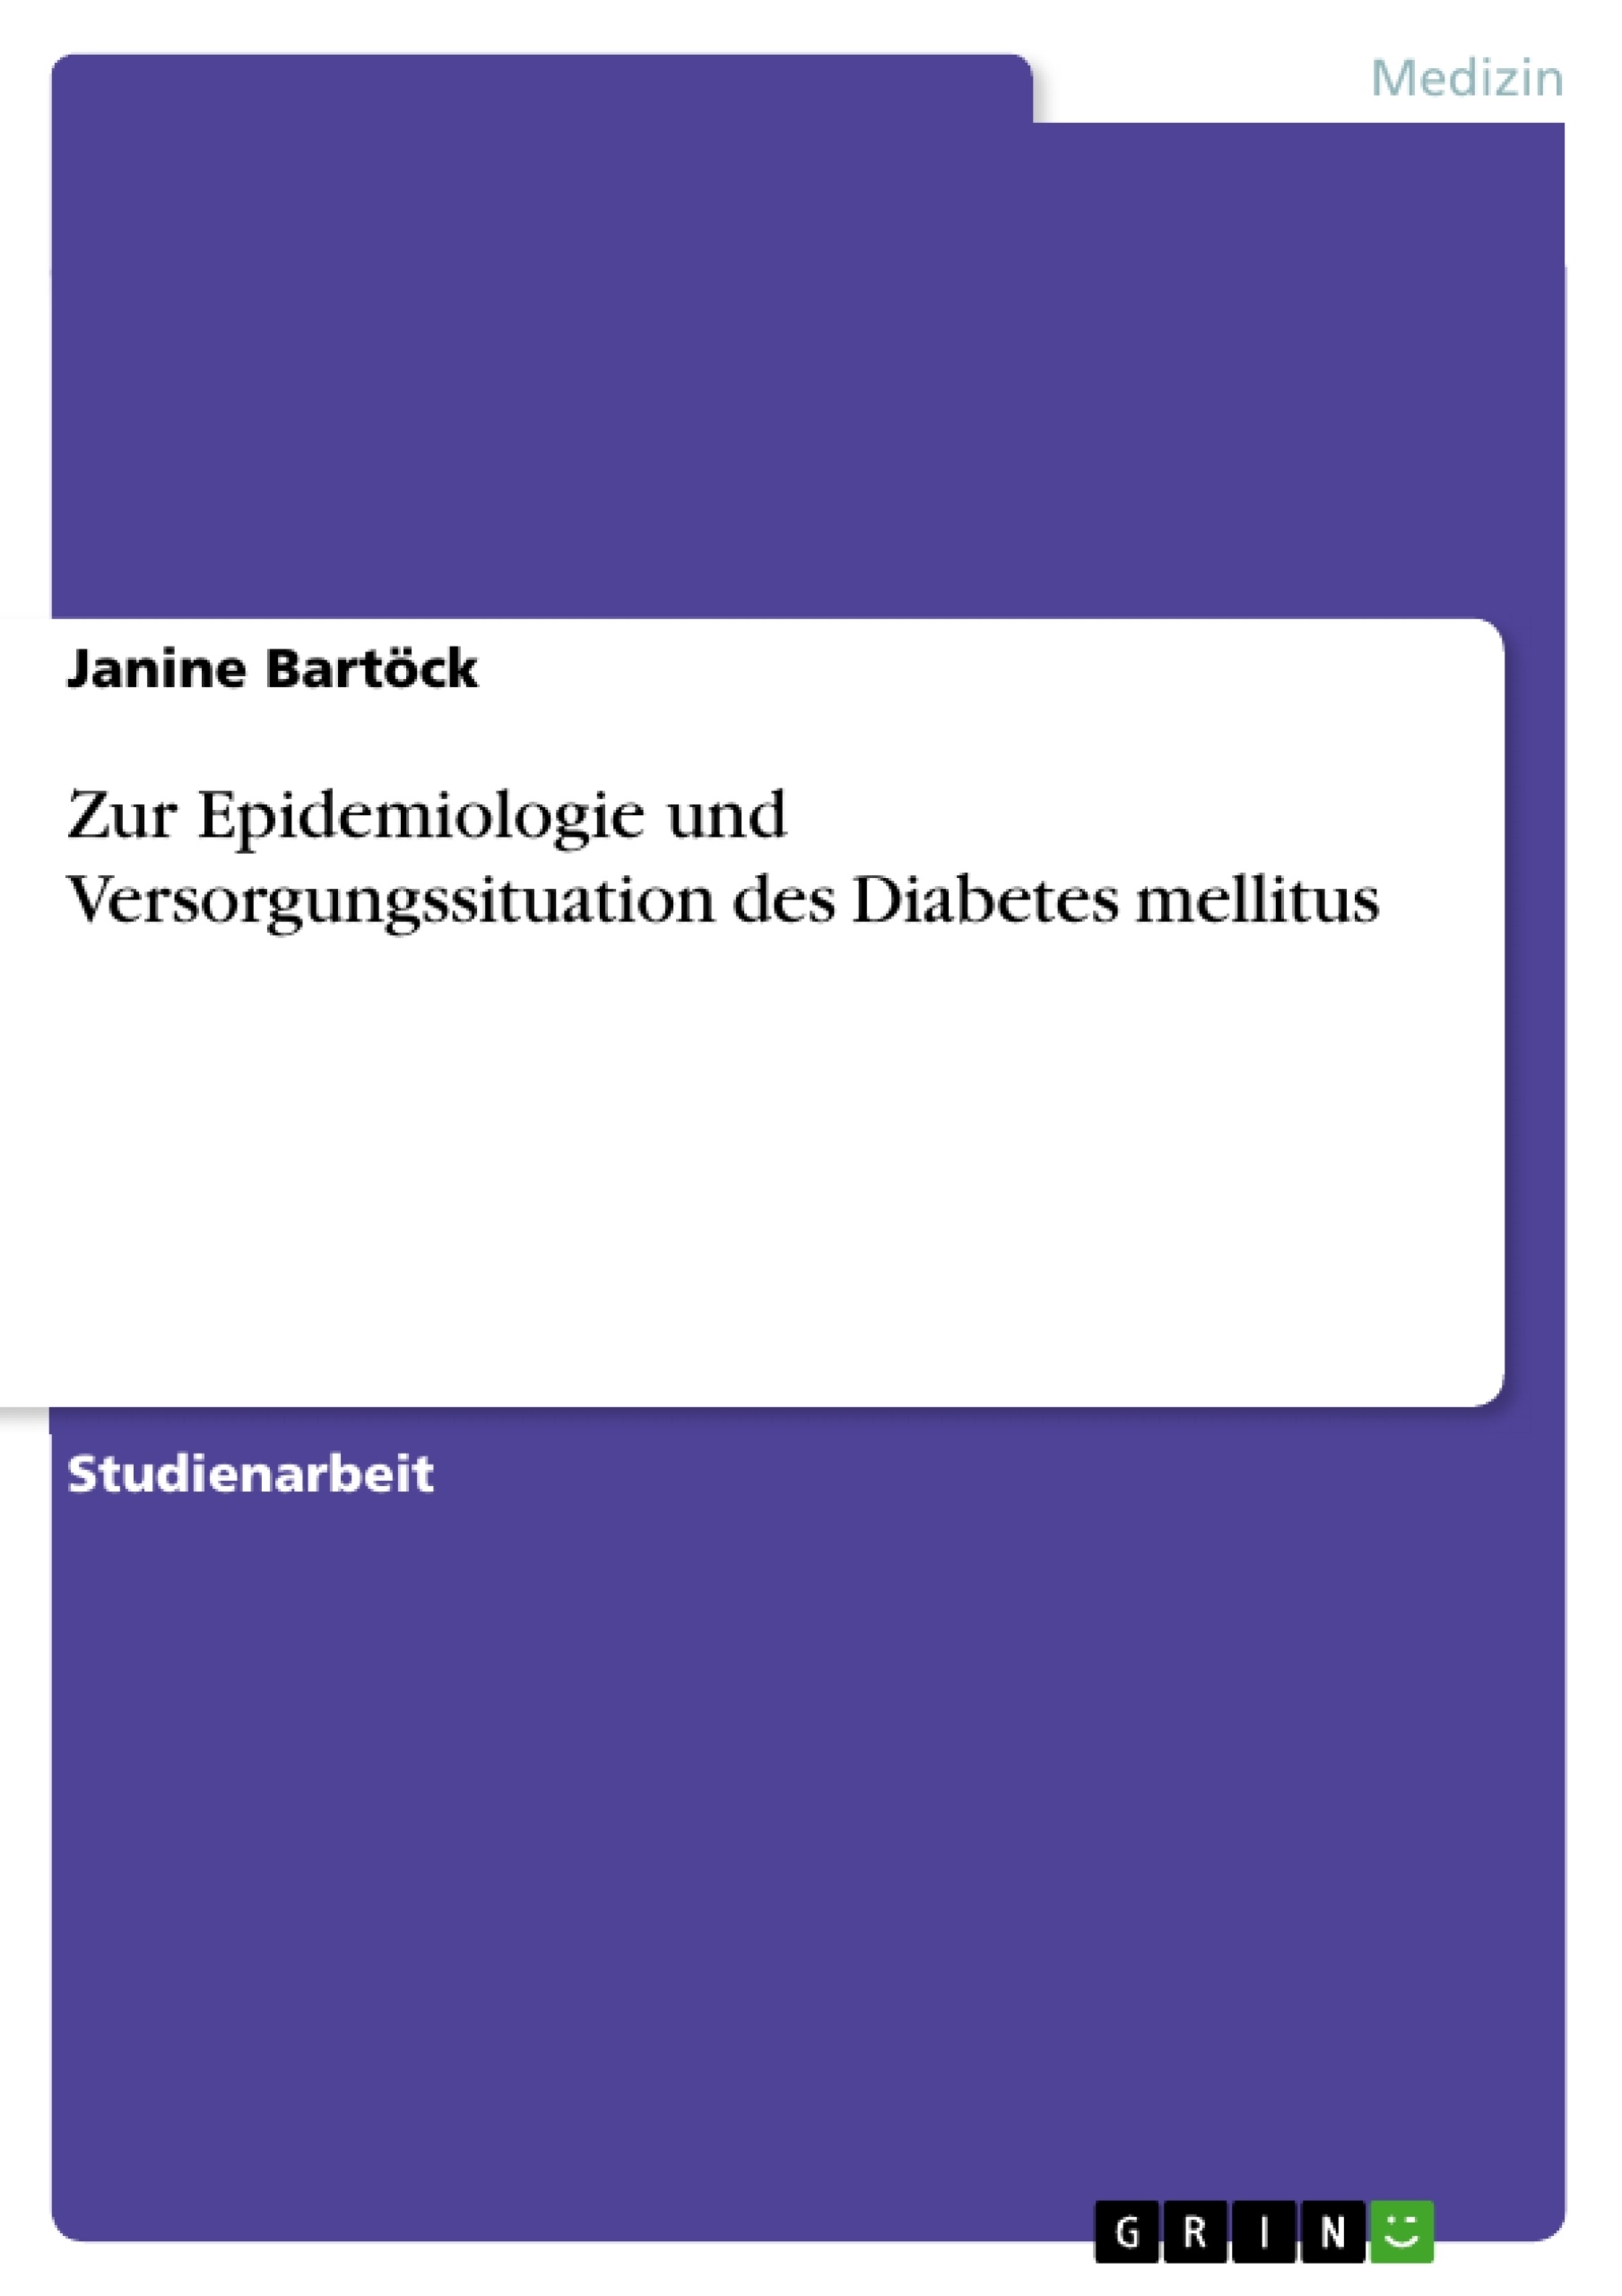 Título: Zur Epidemiologie und Versorgungssituation des Diabetes mellitus